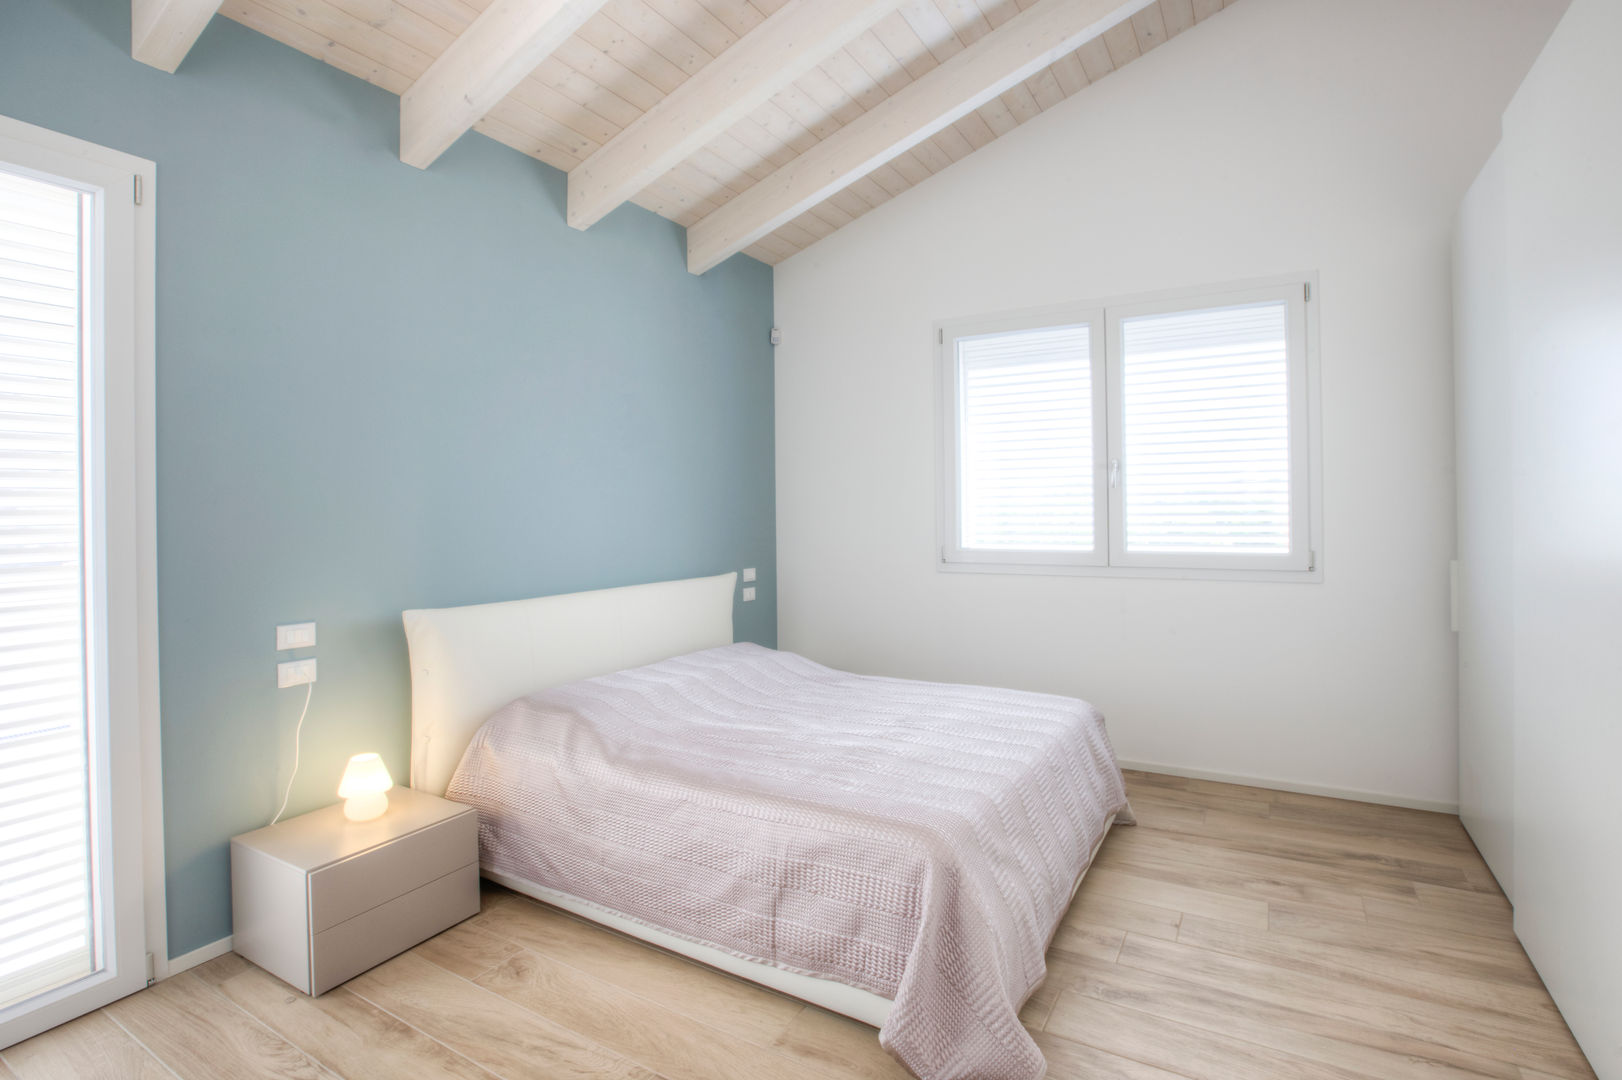 Casa in legno Villa Conti, Progettolegno srl Progettolegno srl Modern style bedroom Wood Wood effect